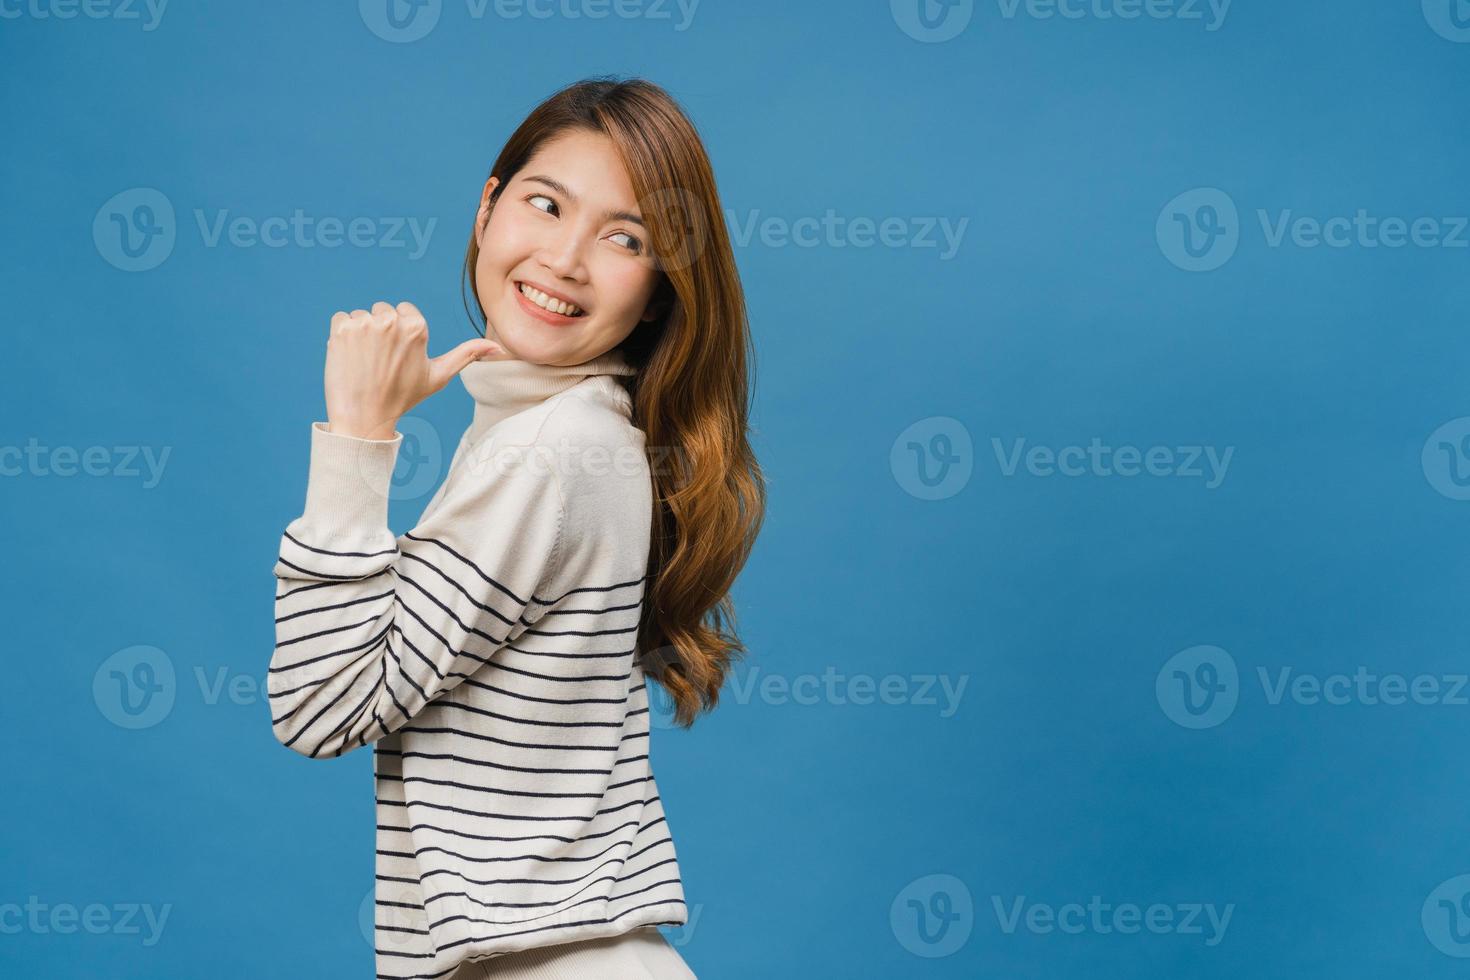 portret van een jonge aziatische dame die lacht met een vrolijke uitdrukking, toont iets geweldigs op lege ruimte in casual kleding en staat geïsoleerd op een blauwe achtergrond. gezichtsuitdrukking concept. foto